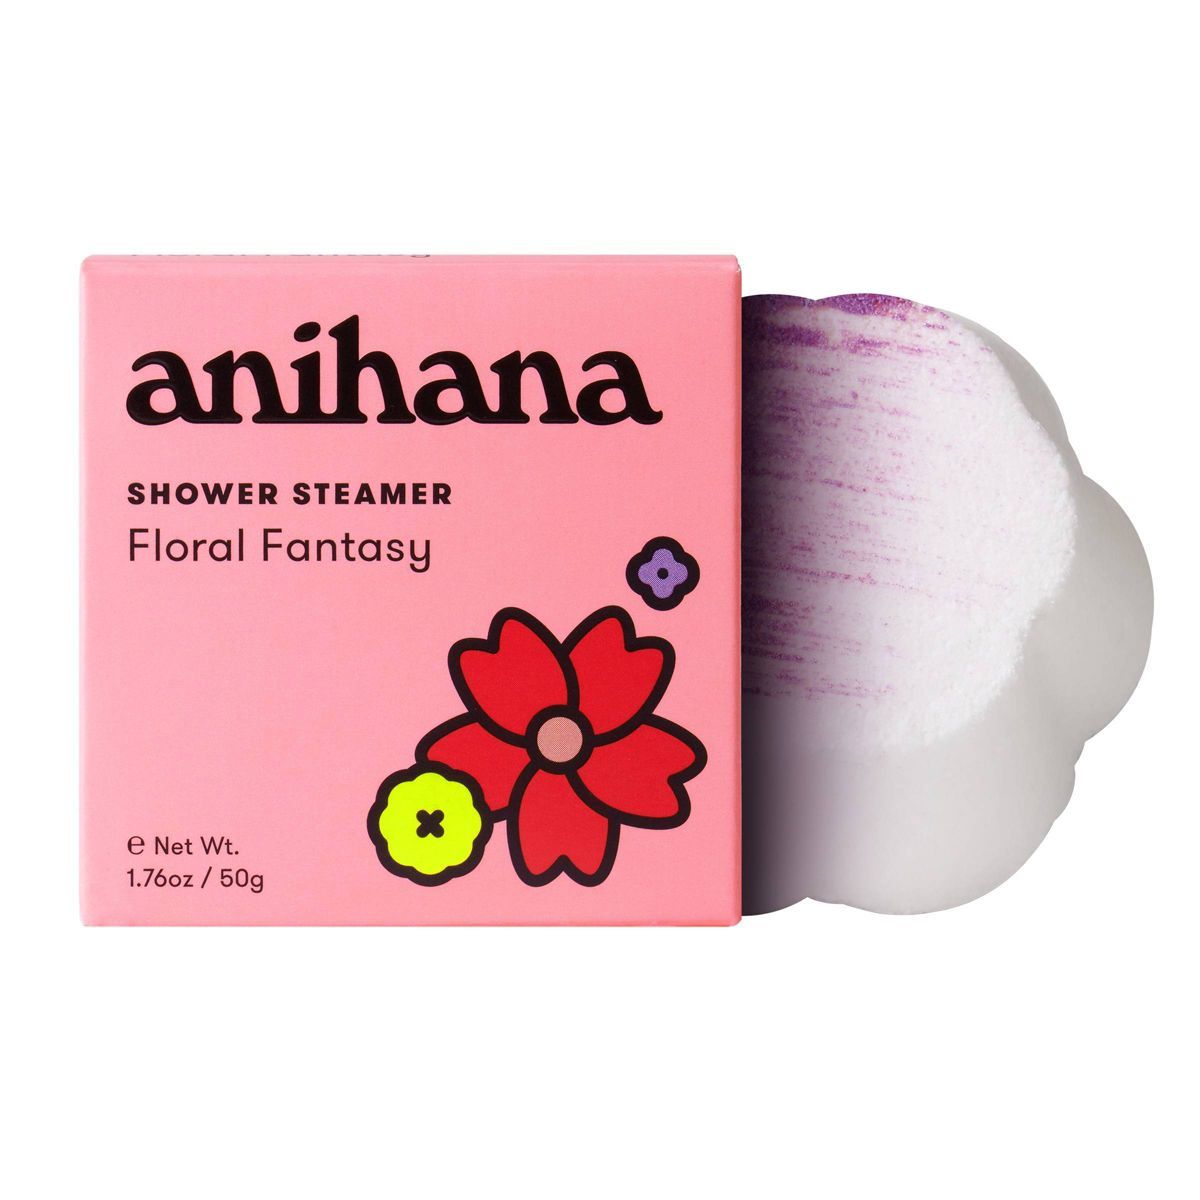 anihana Shower Steamer Floral Fantasy - 1.76oz | Target